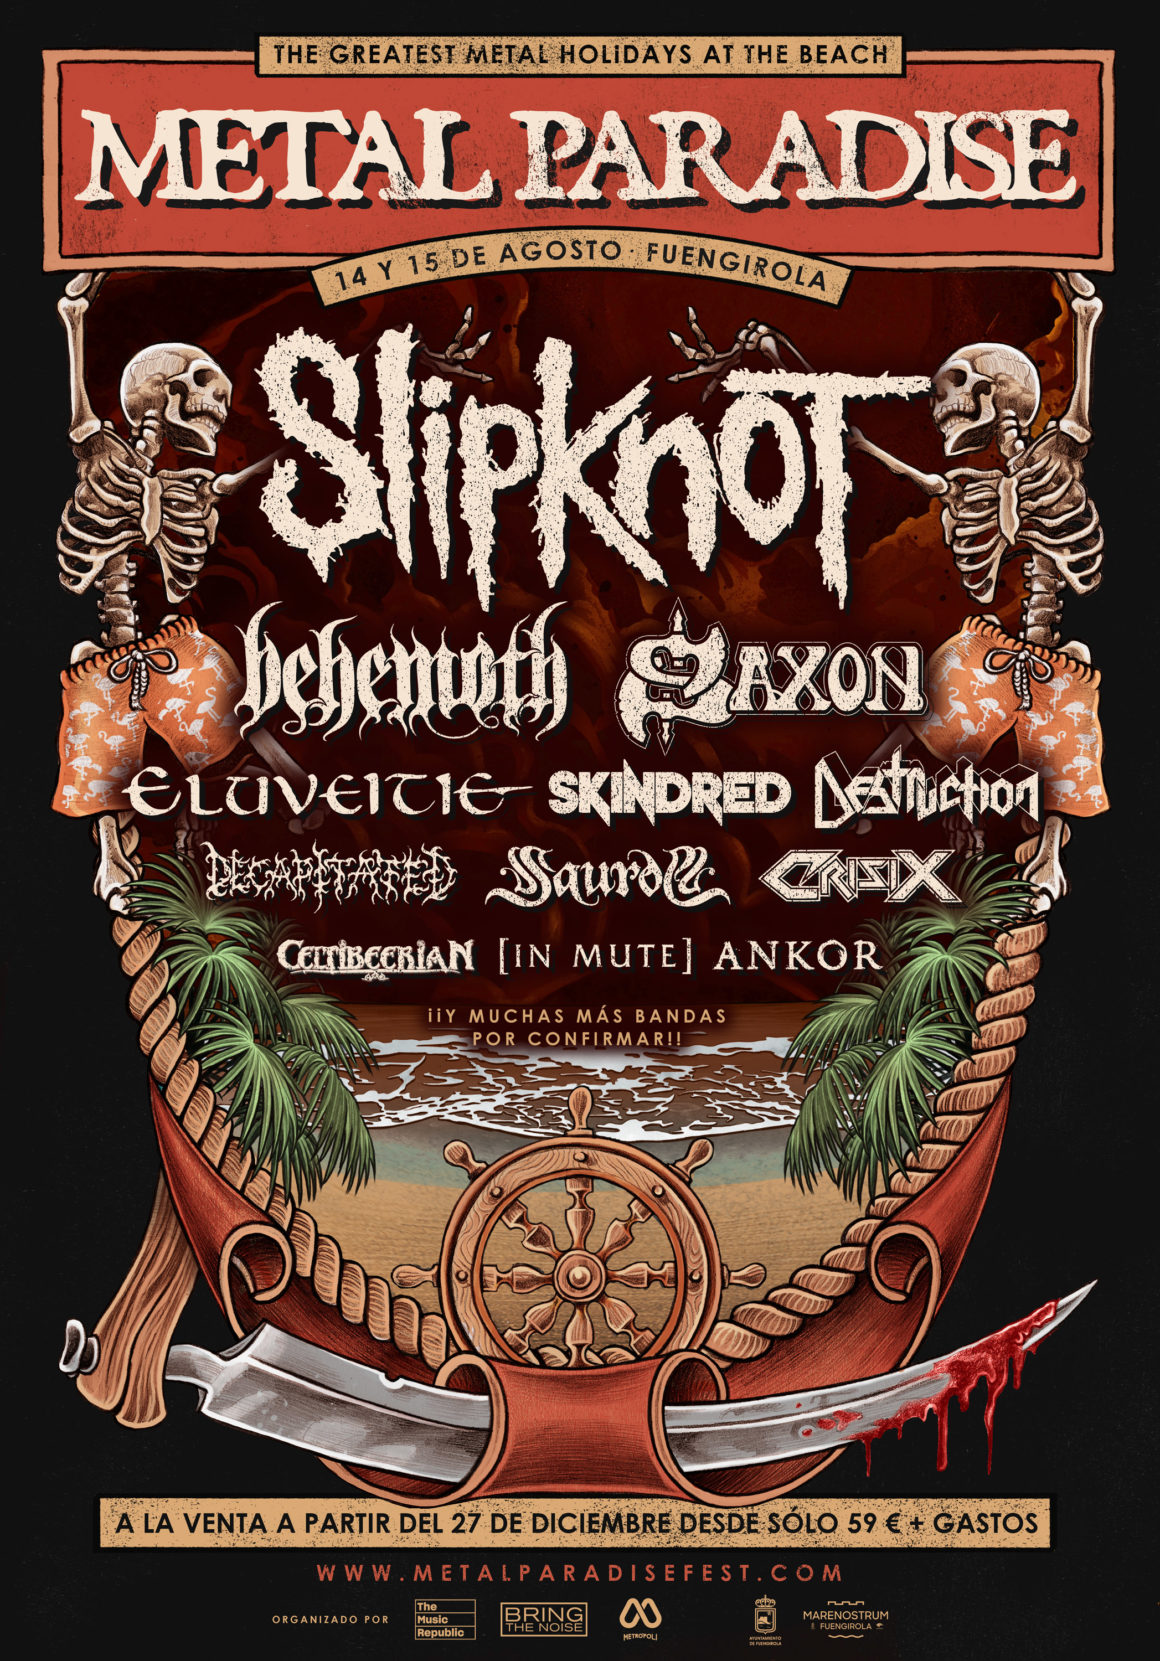 Slipknot encabezará el festival Metal Paradise de Fuengirola